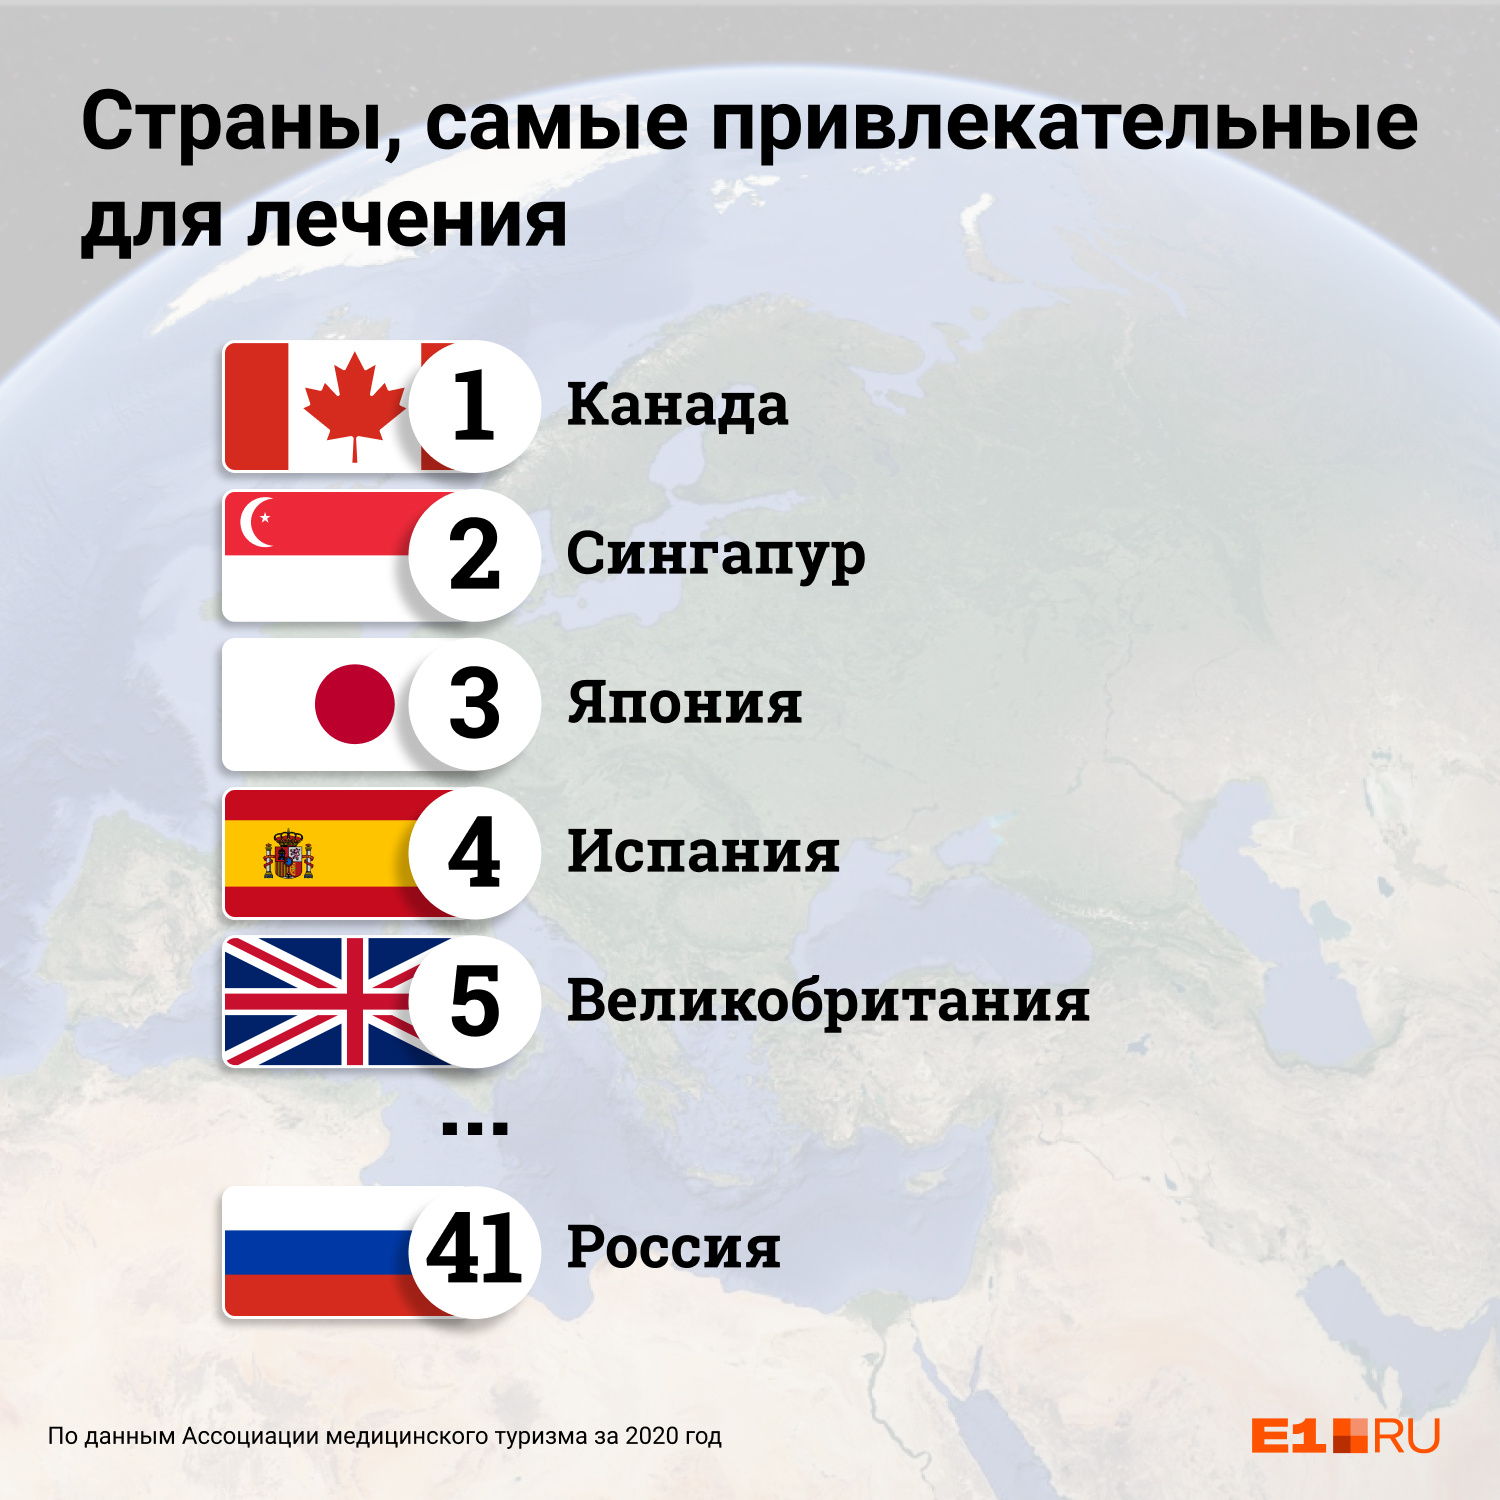 В списке стран, привлекательных для медицинского туризма, Россия занимает 41-е место из 46 